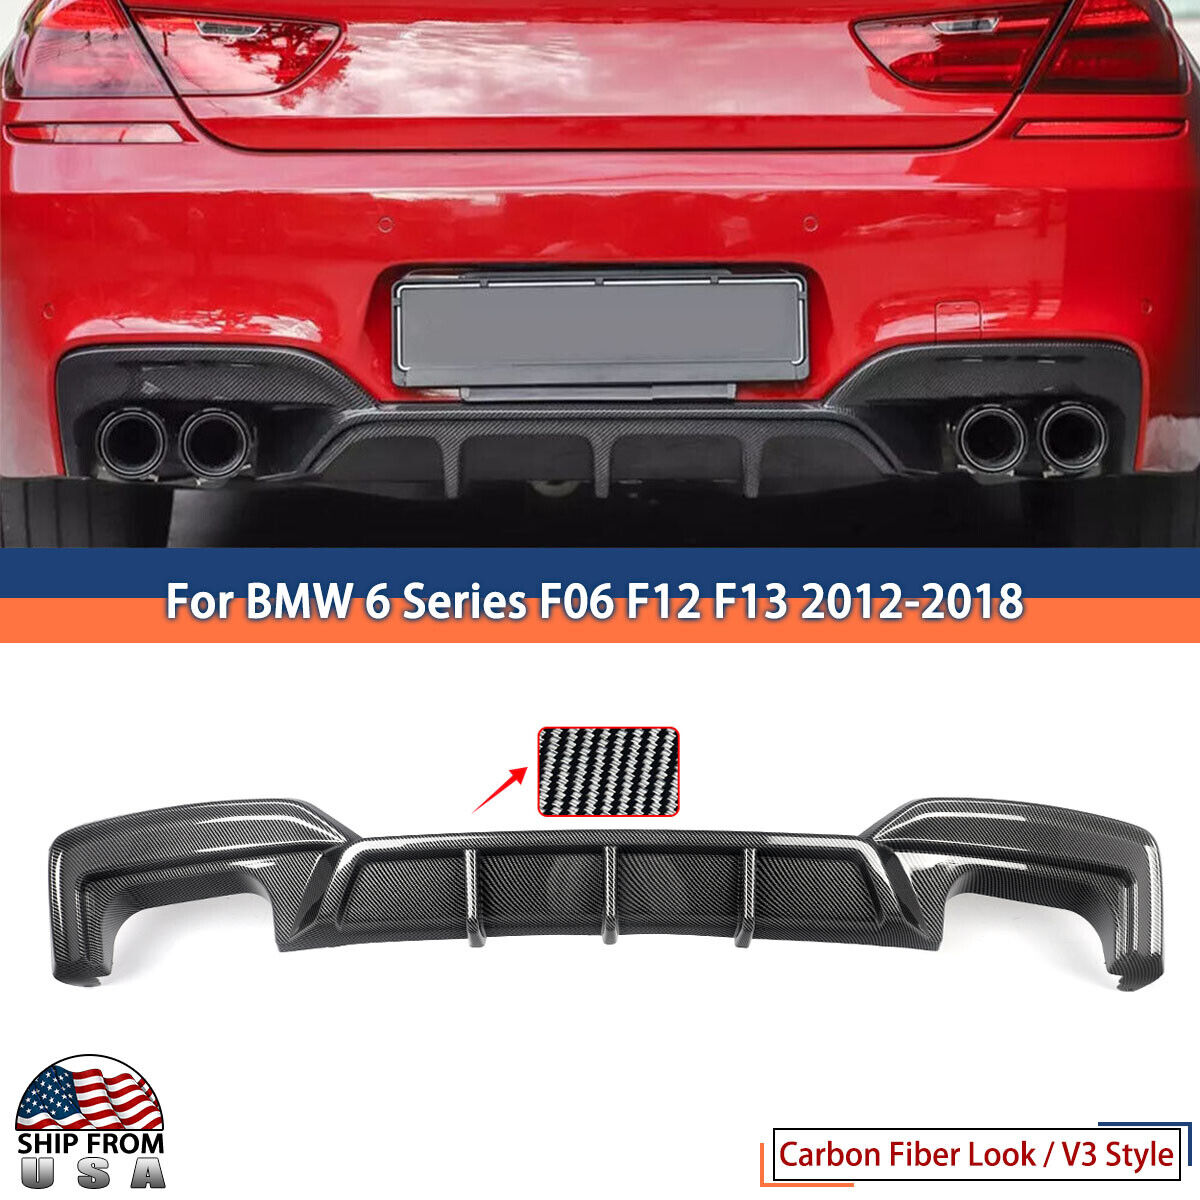 Carbon Look Rear Bumper Diffuser Lip For BMW F06 F12 F13 M6 640i 650i 2012-2018